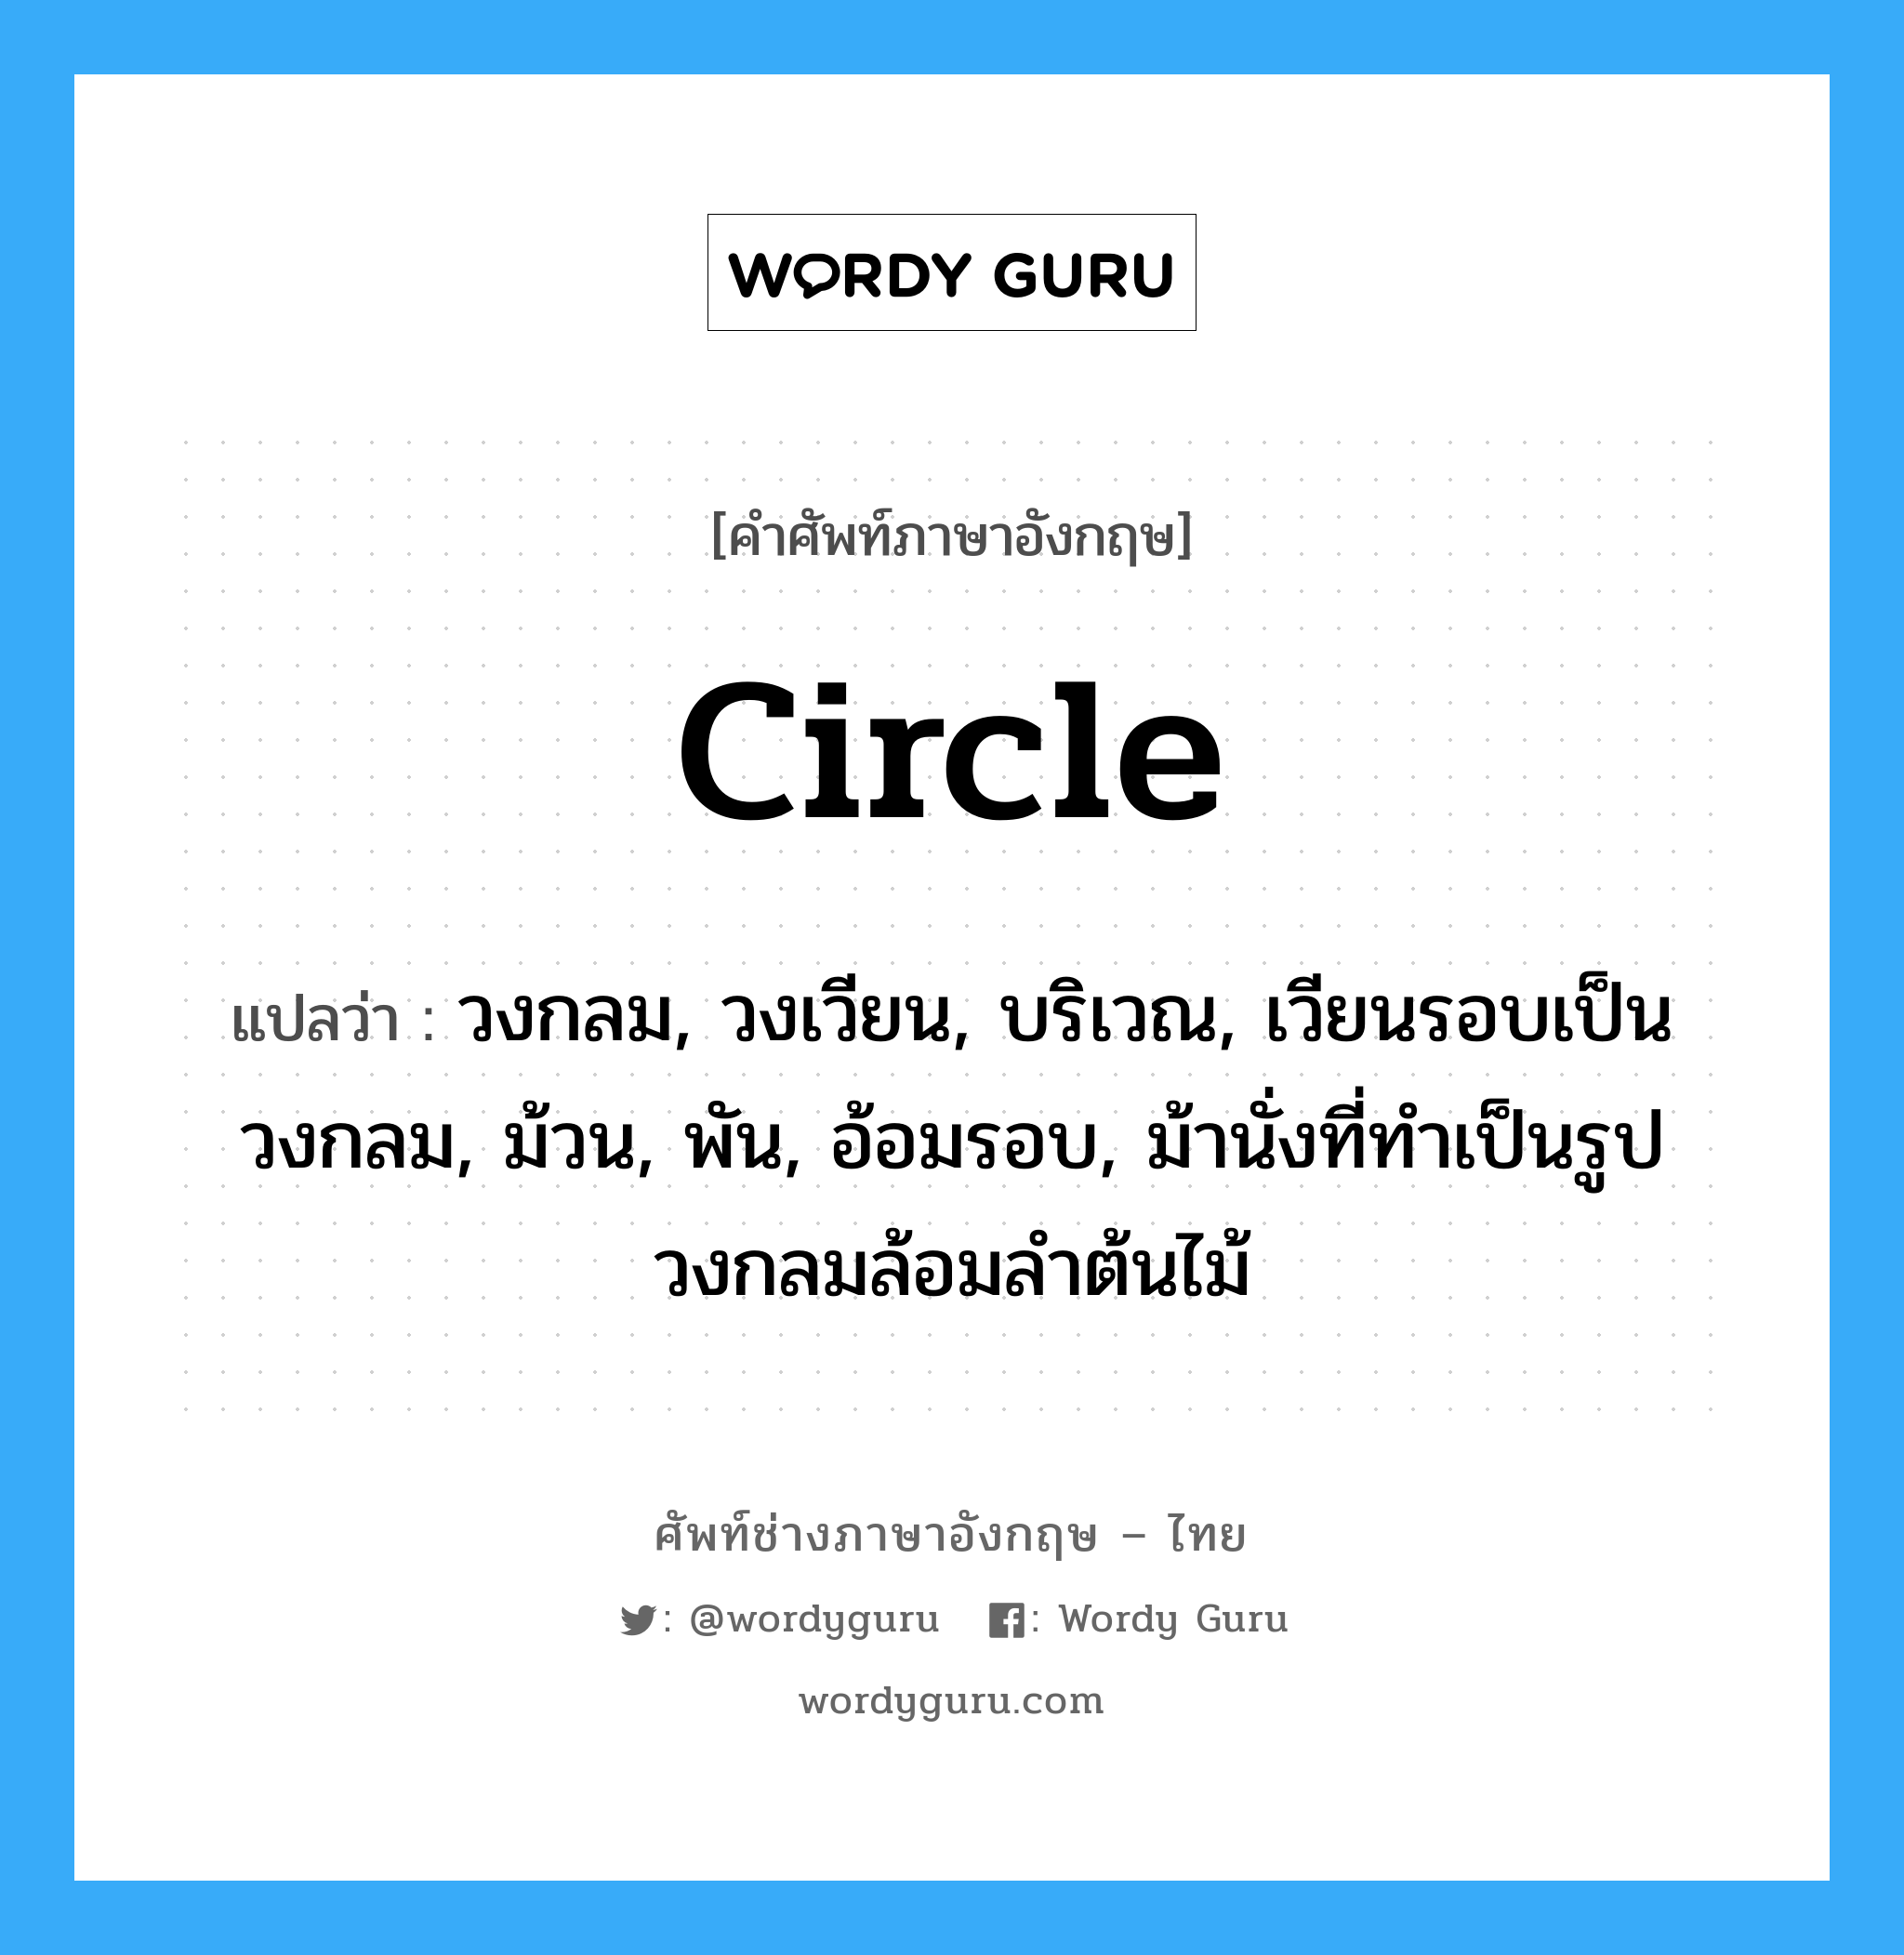 circle แปลว่า?, คำศัพท์ช่างภาษาอังกฤษ - ไทย circle คำศัพท์ภาษาอังกฤษ circle แปลว่า วงกลม, วงเวียน, บริเวณ, เวียนรอบเป็นวงกลม, ม้วน, พัน, อ้อมรอบ, ม้านั่งที่ทำเป็นรูปวงกลมล้อมลำต้นไม้